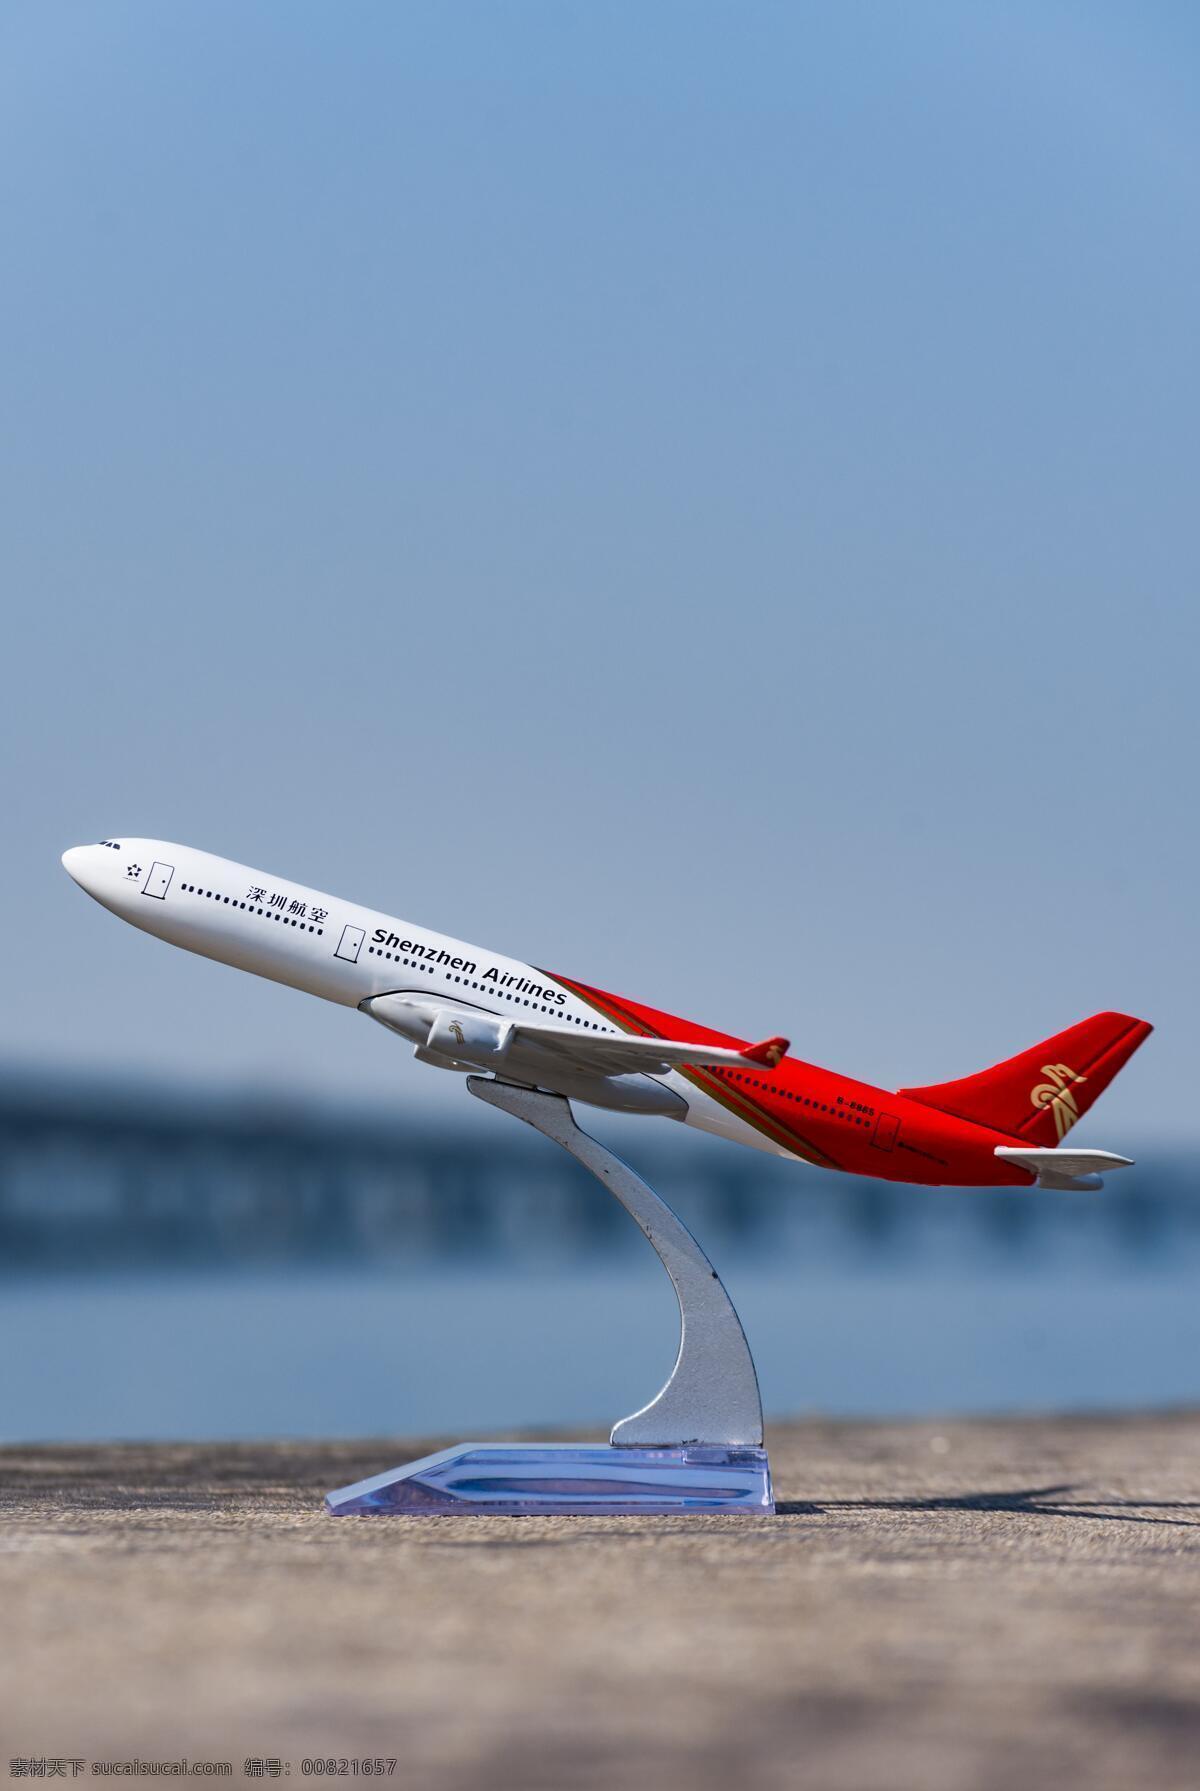 飞机模型 飞机 模型 起飞 起航 旅游 生活百科 生活素材